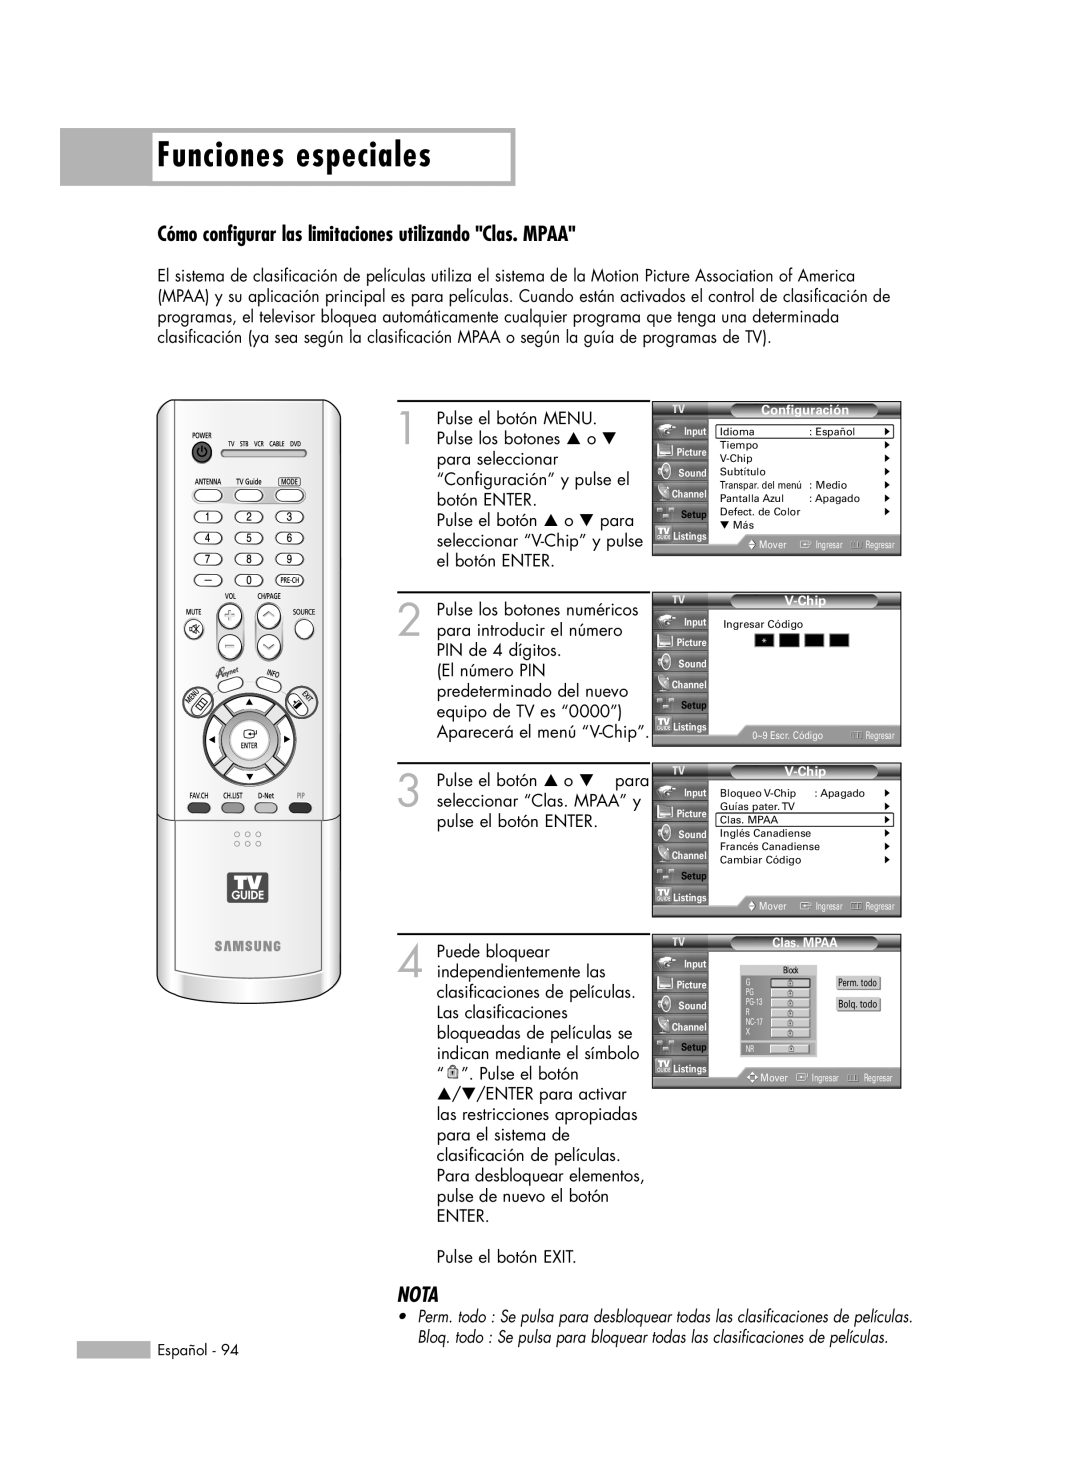 Samsung HL-R5678W, HL-R6178W, HL-R5078W, HL-R7178W manual Funciones especiales, Nota, ENTER Pulse el botón EXIT 